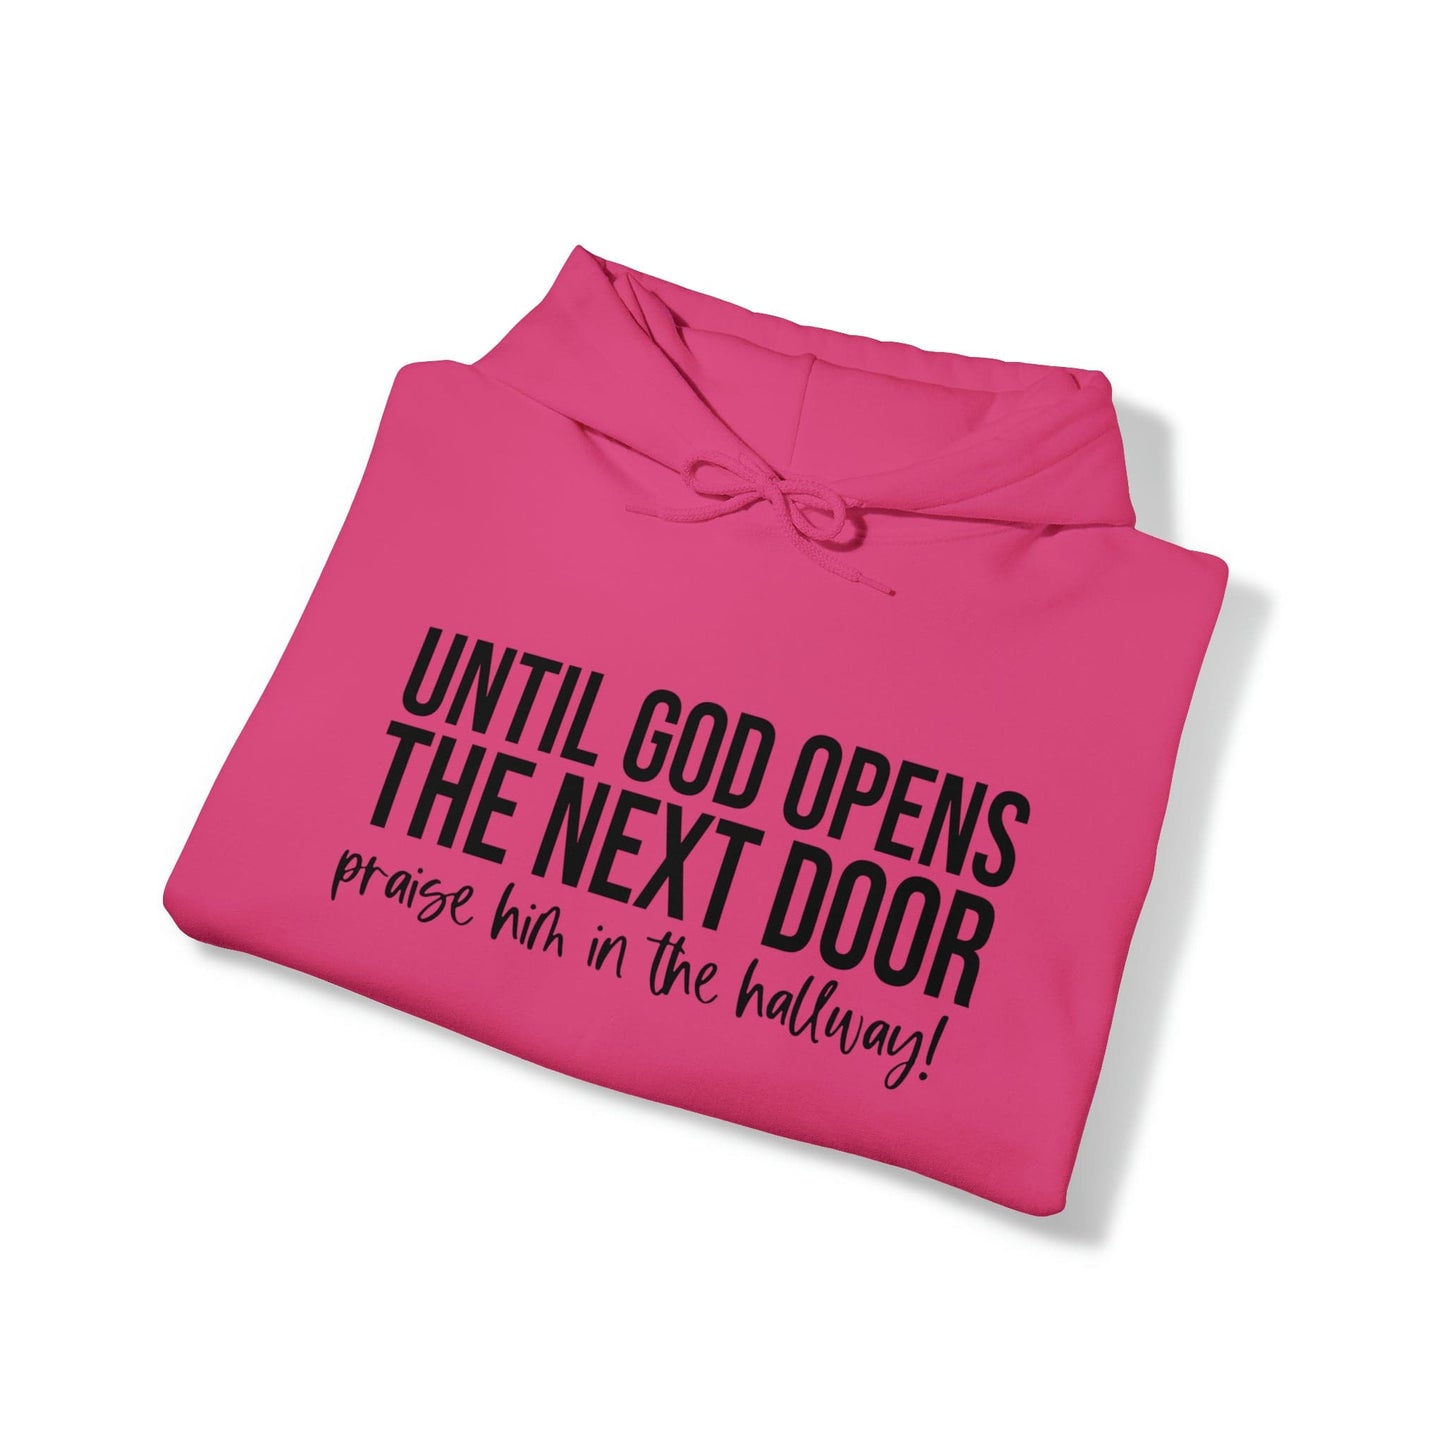 Until God Opens The Next Door Unisex Heavy Blend™ Hooded Sweatshirt